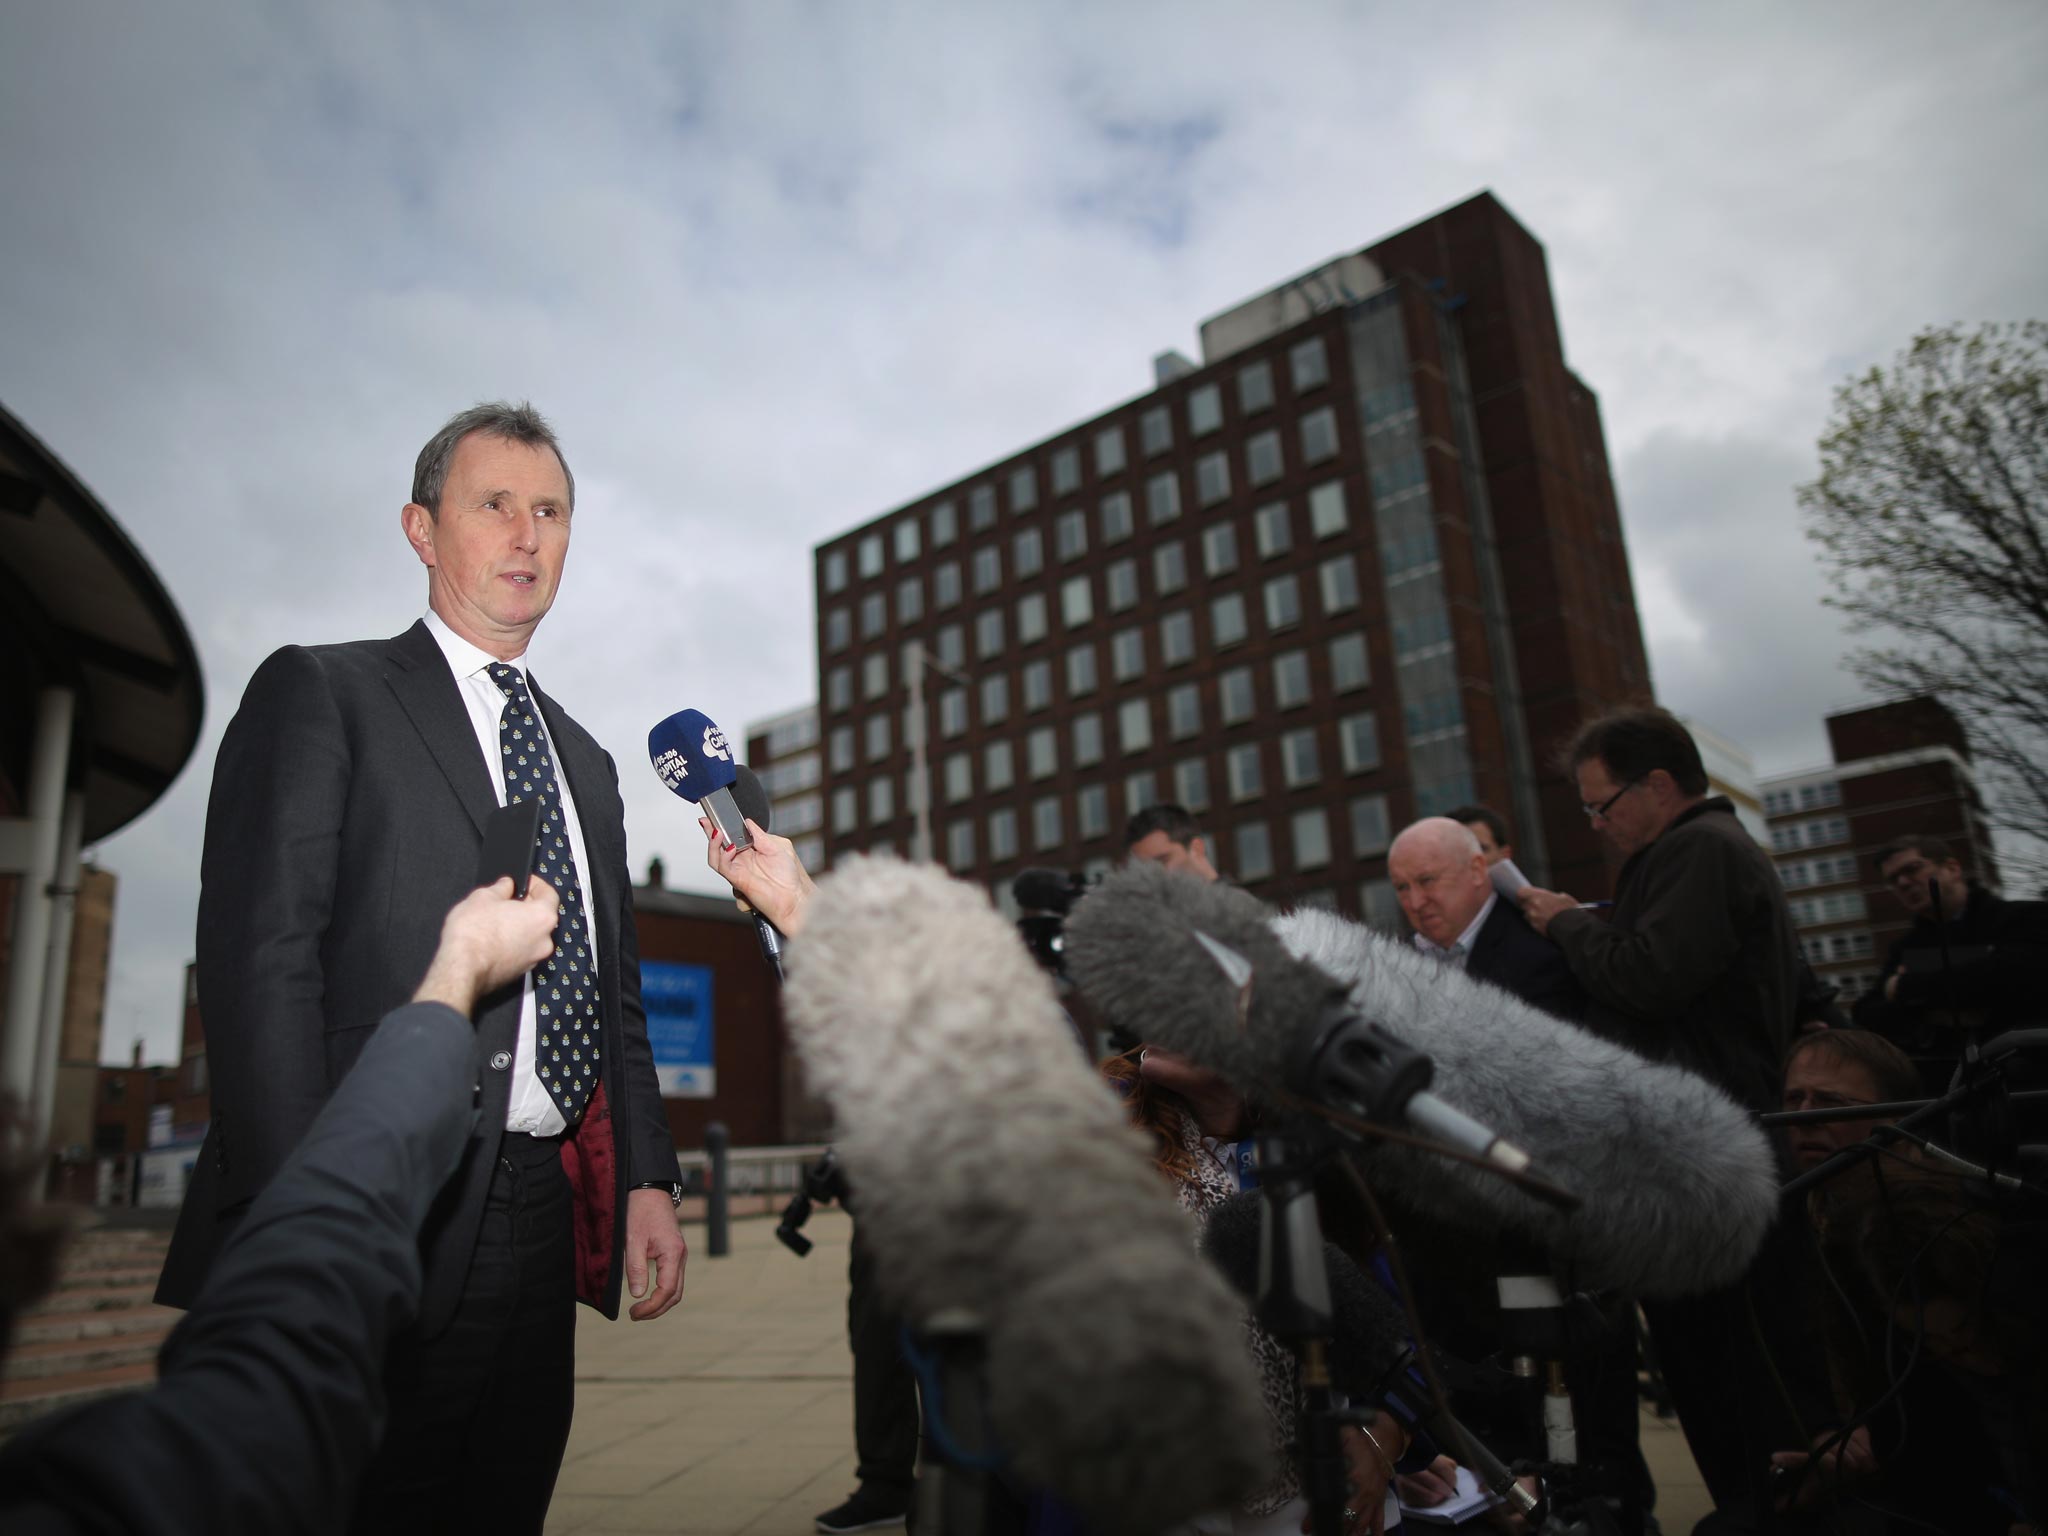 Former deputy speaker of the House of Commons Nigel Evans speaks to the media